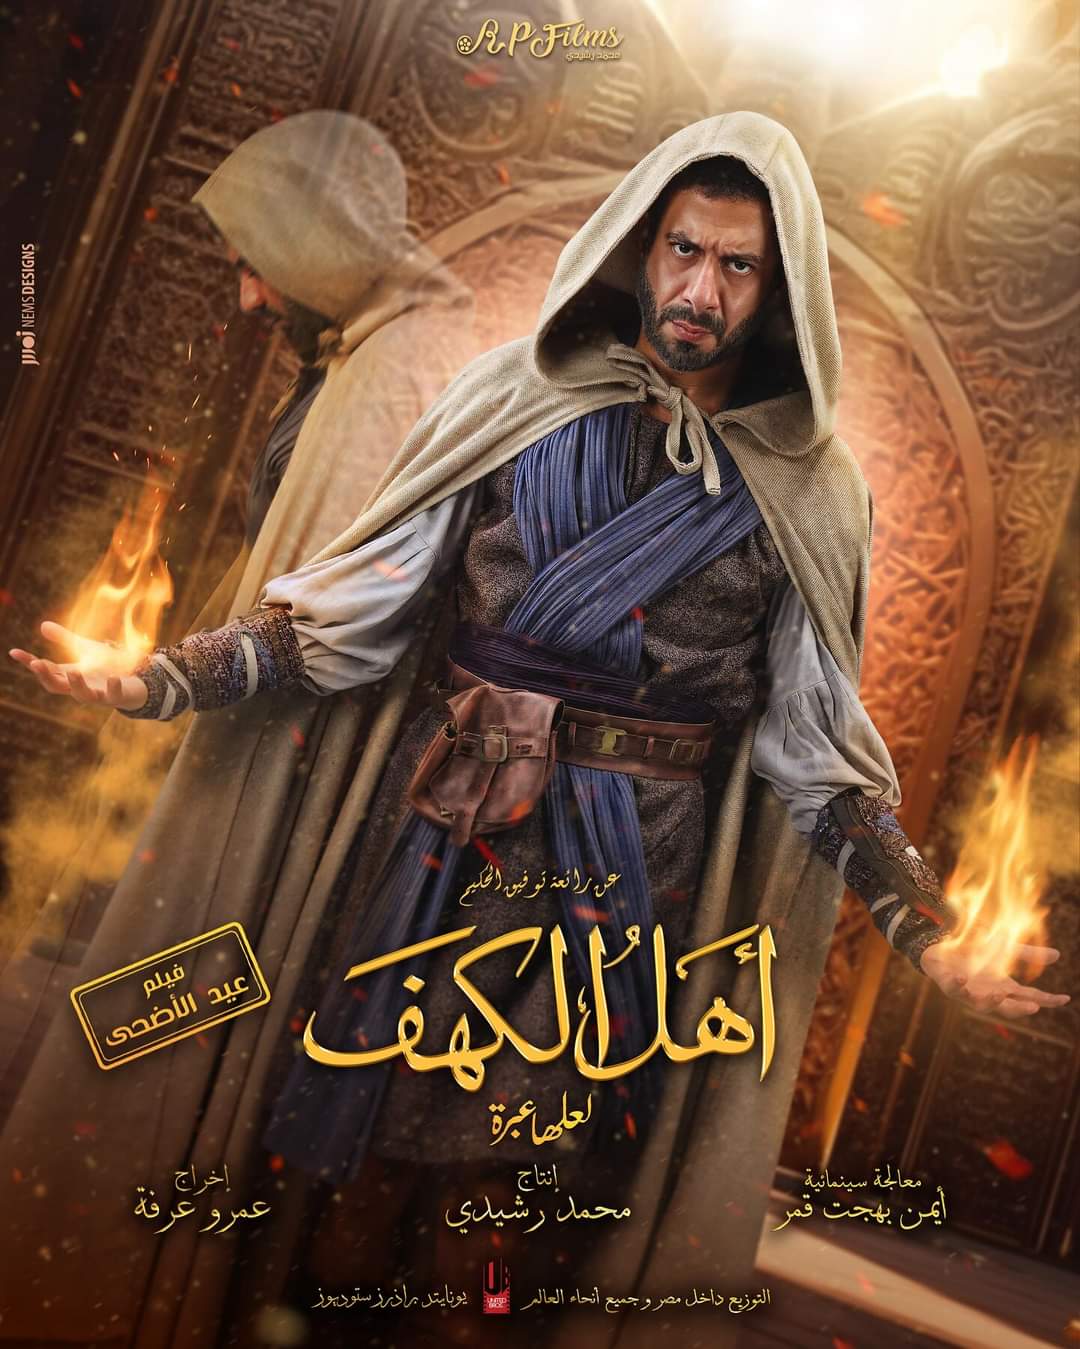 محمد فراج بوستر فيلم اهل الكهف